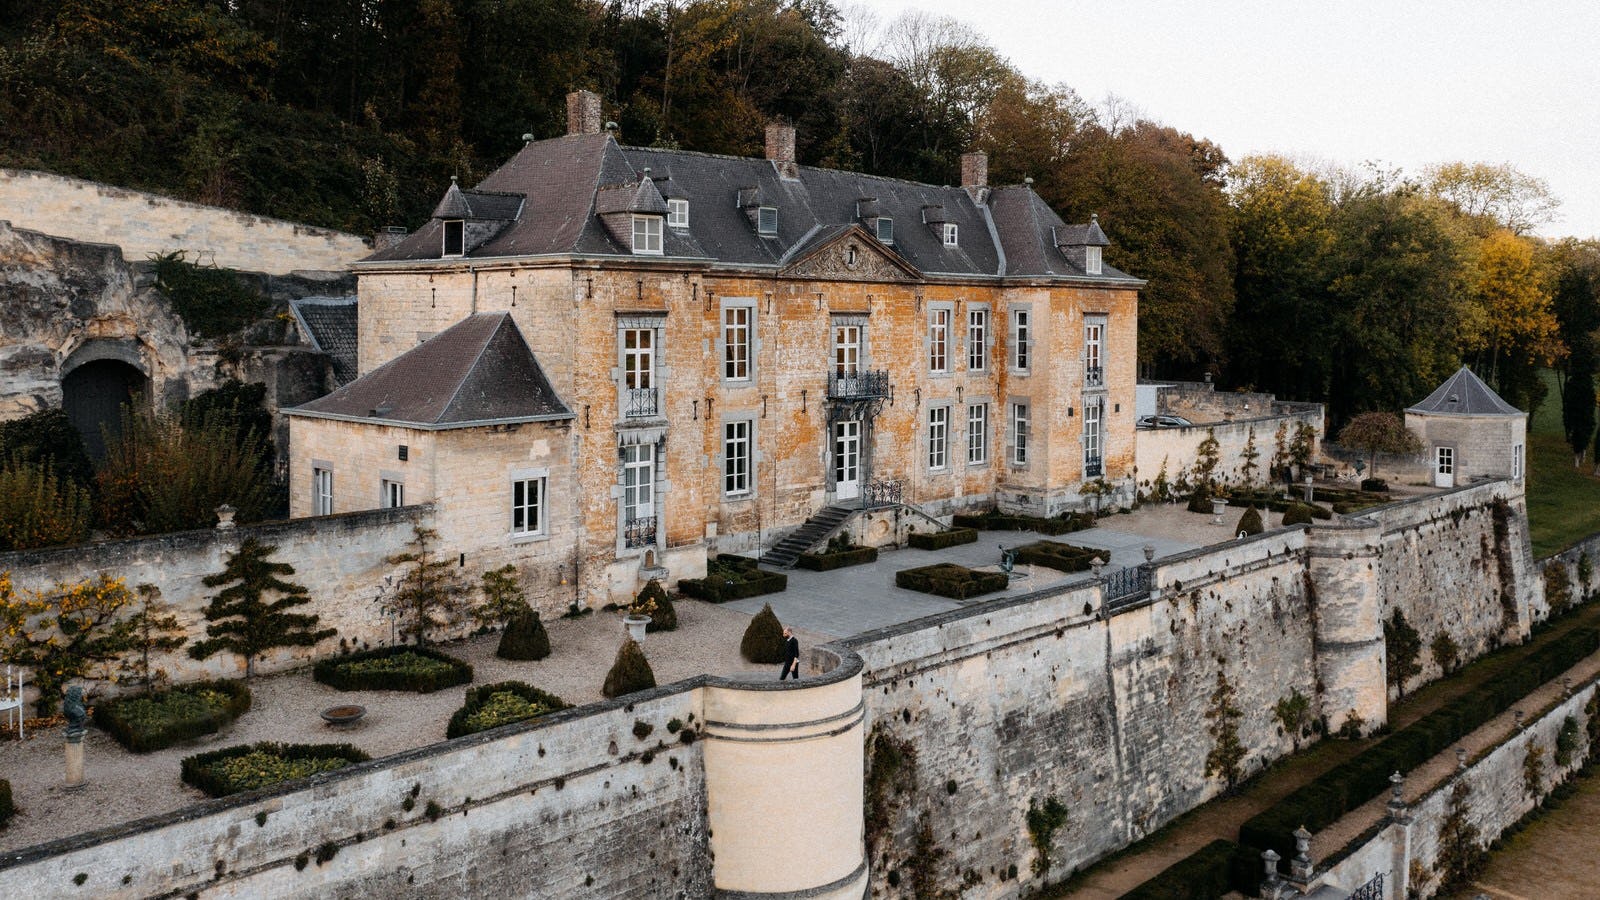 Binnenkijken bij de nieuwe exclusieve suites van Château Neercanne